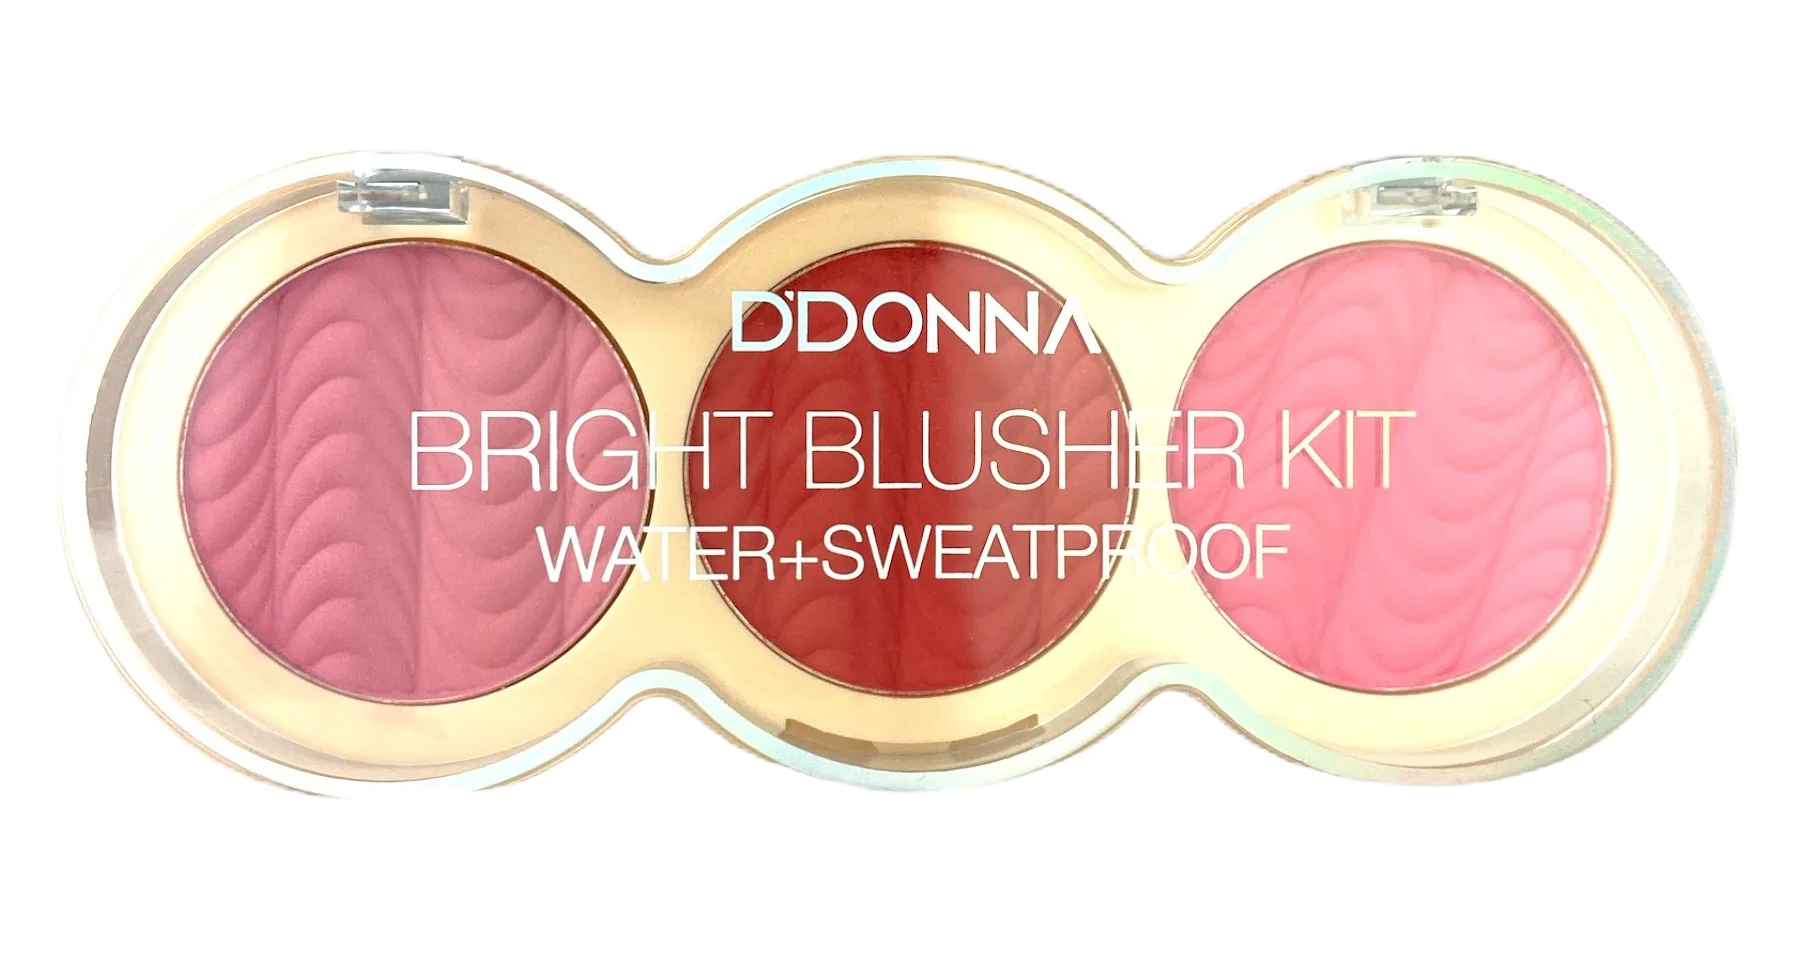 Bright Blusher Kit Water Sweatproof 7,5gr no 04 DDONNA Cosmetics 13319A-4 – DDONNA Cosmetics – nj_13319A-4